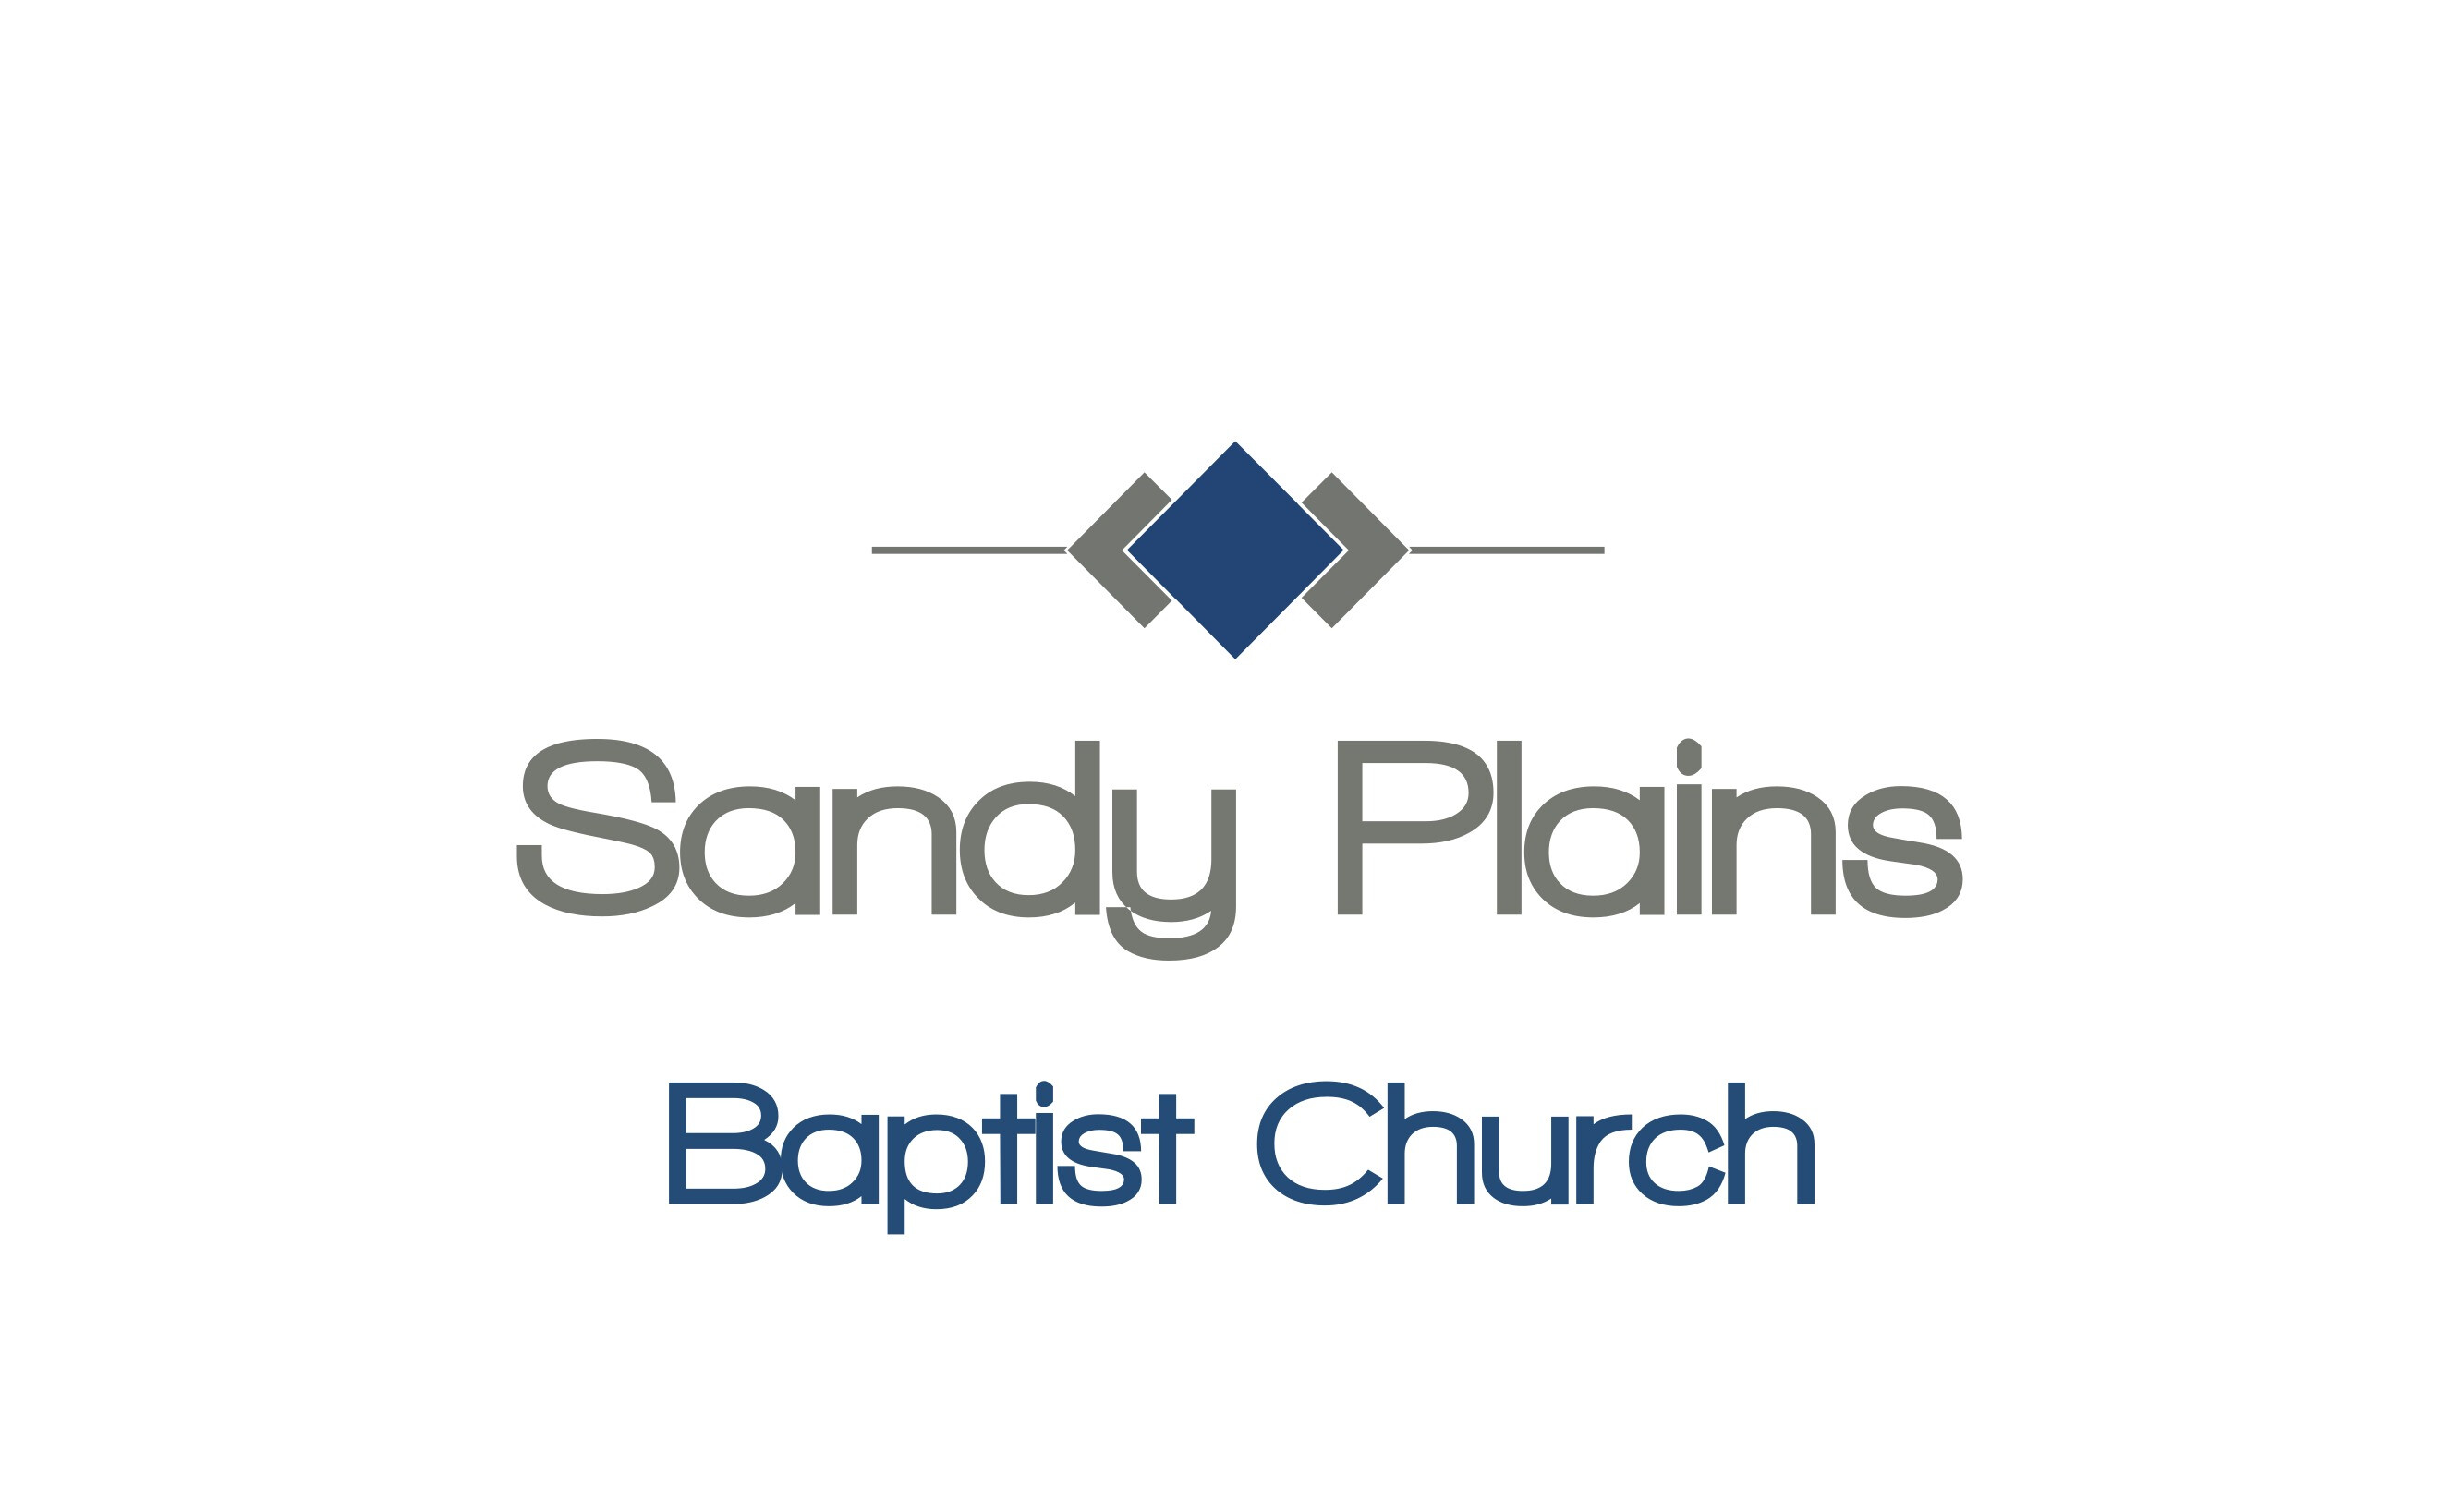 Sandy Plains Baptist Church - Gastonia churches, Clover churches, Belmont